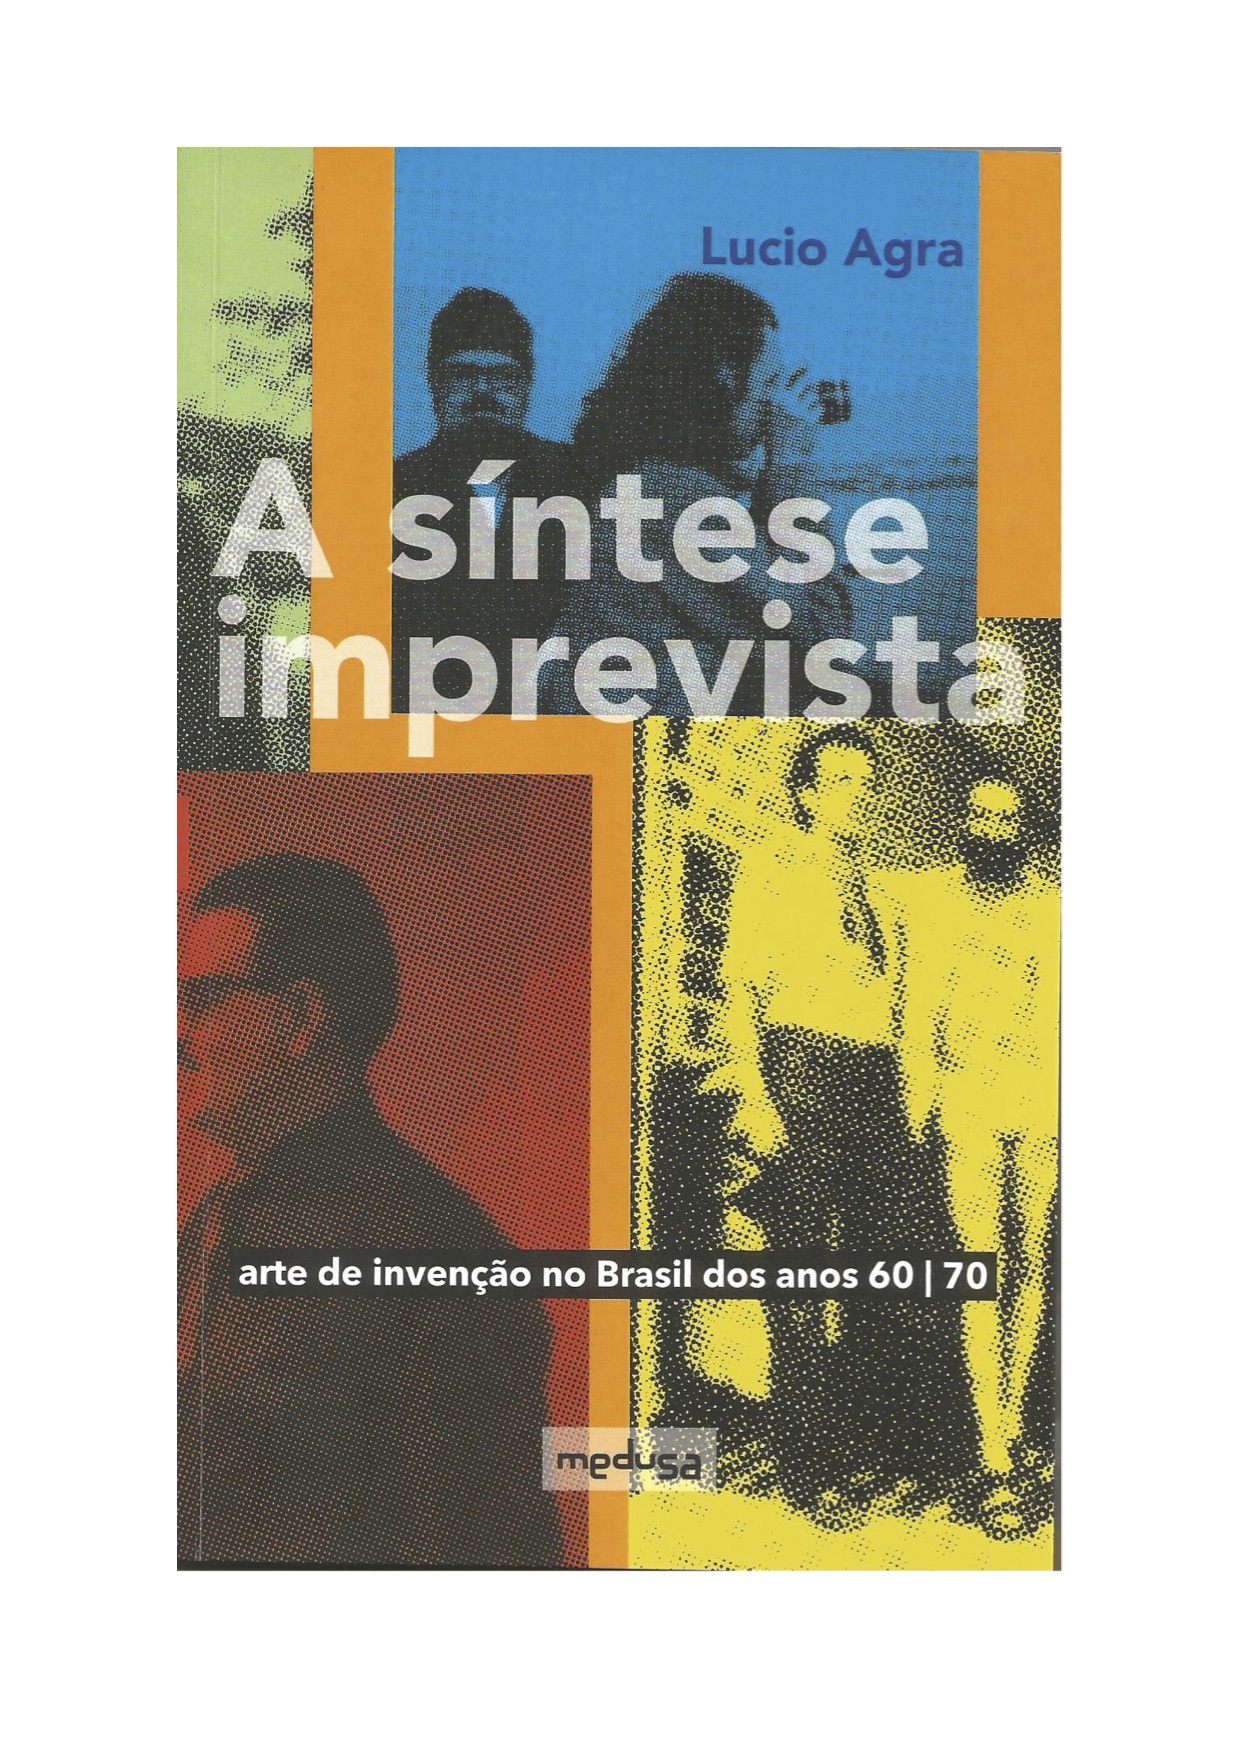 Capa do livro: Agra, L. A síntese imprevista – arte de invenção no Brasil dos anos 60/70 . Curitiba, Ed. Medusa, 2022.